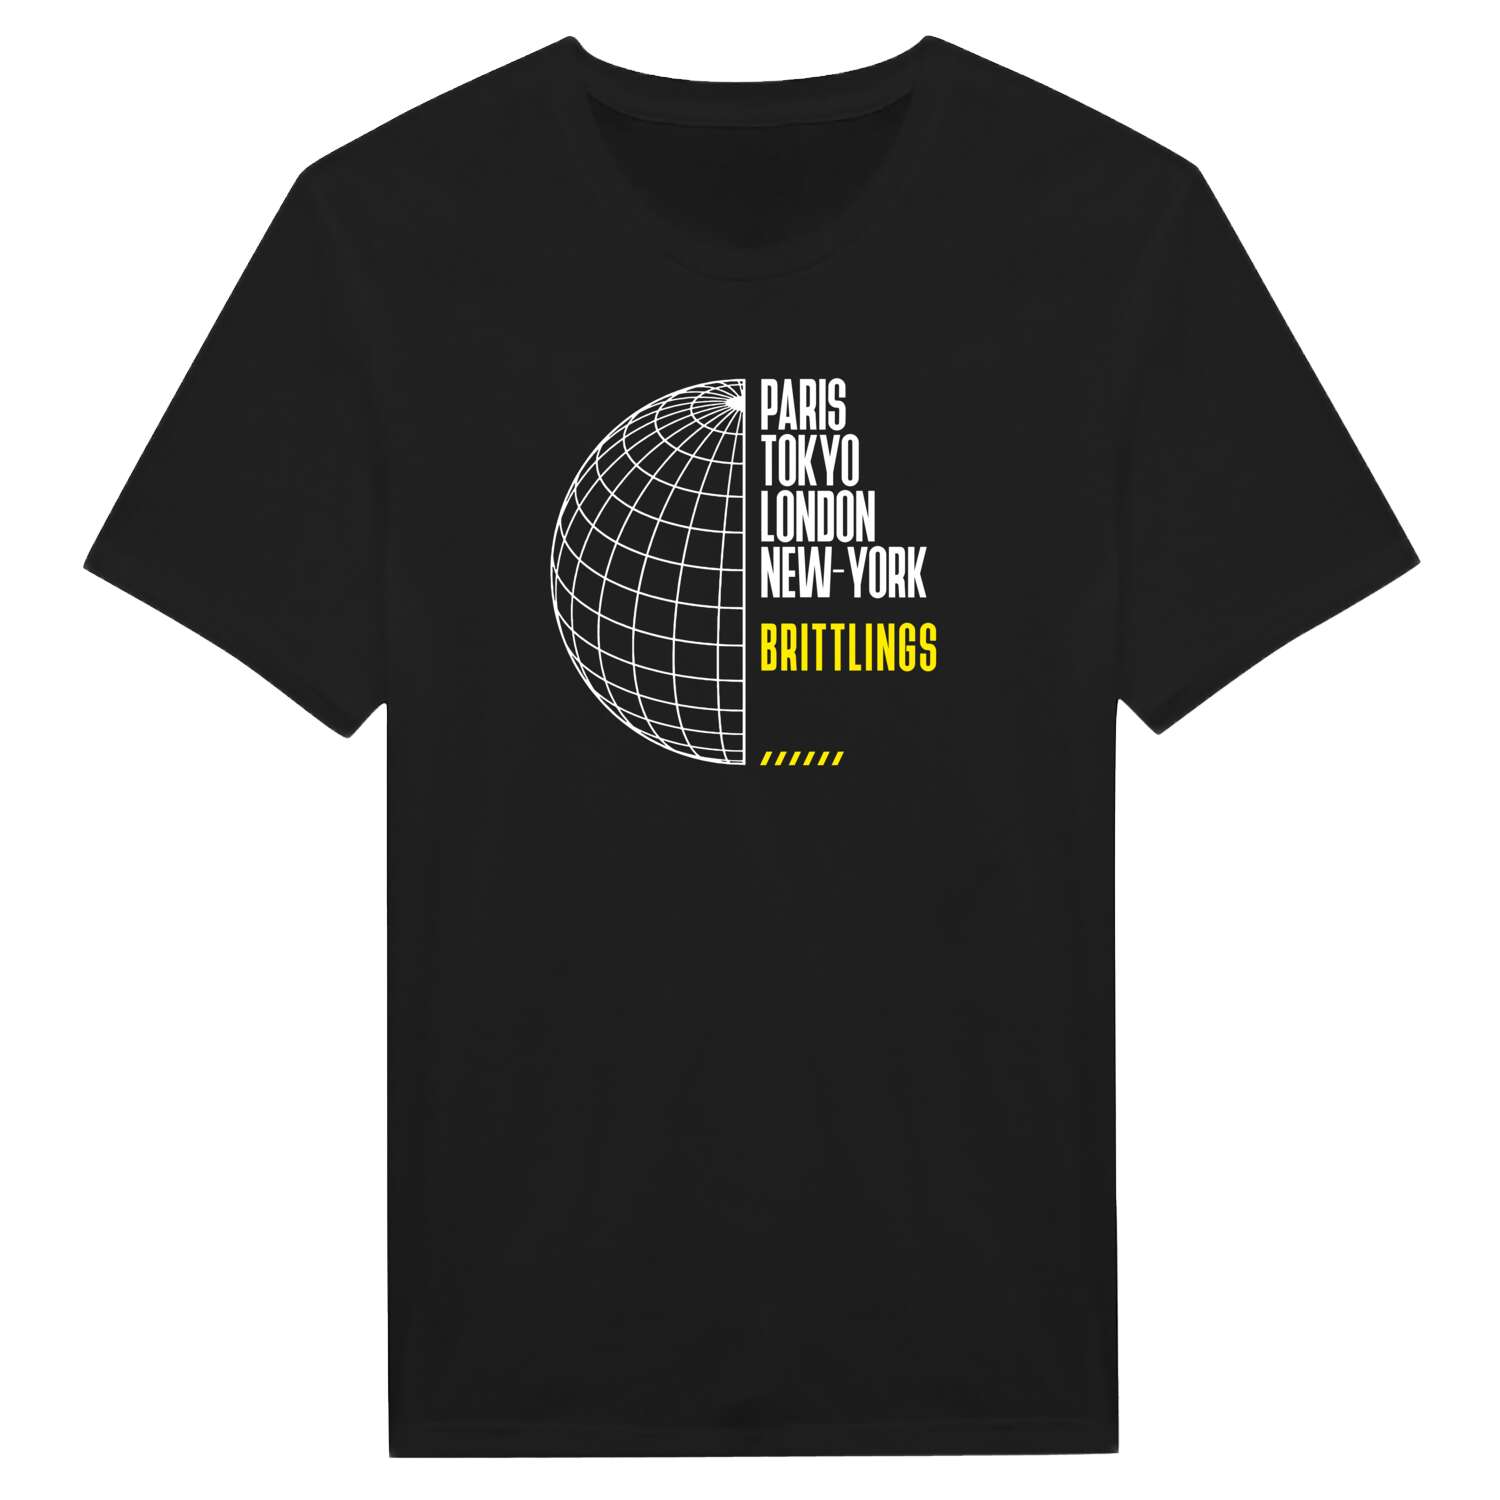 Brittlings T-Shirt »Paris Tokyo London«